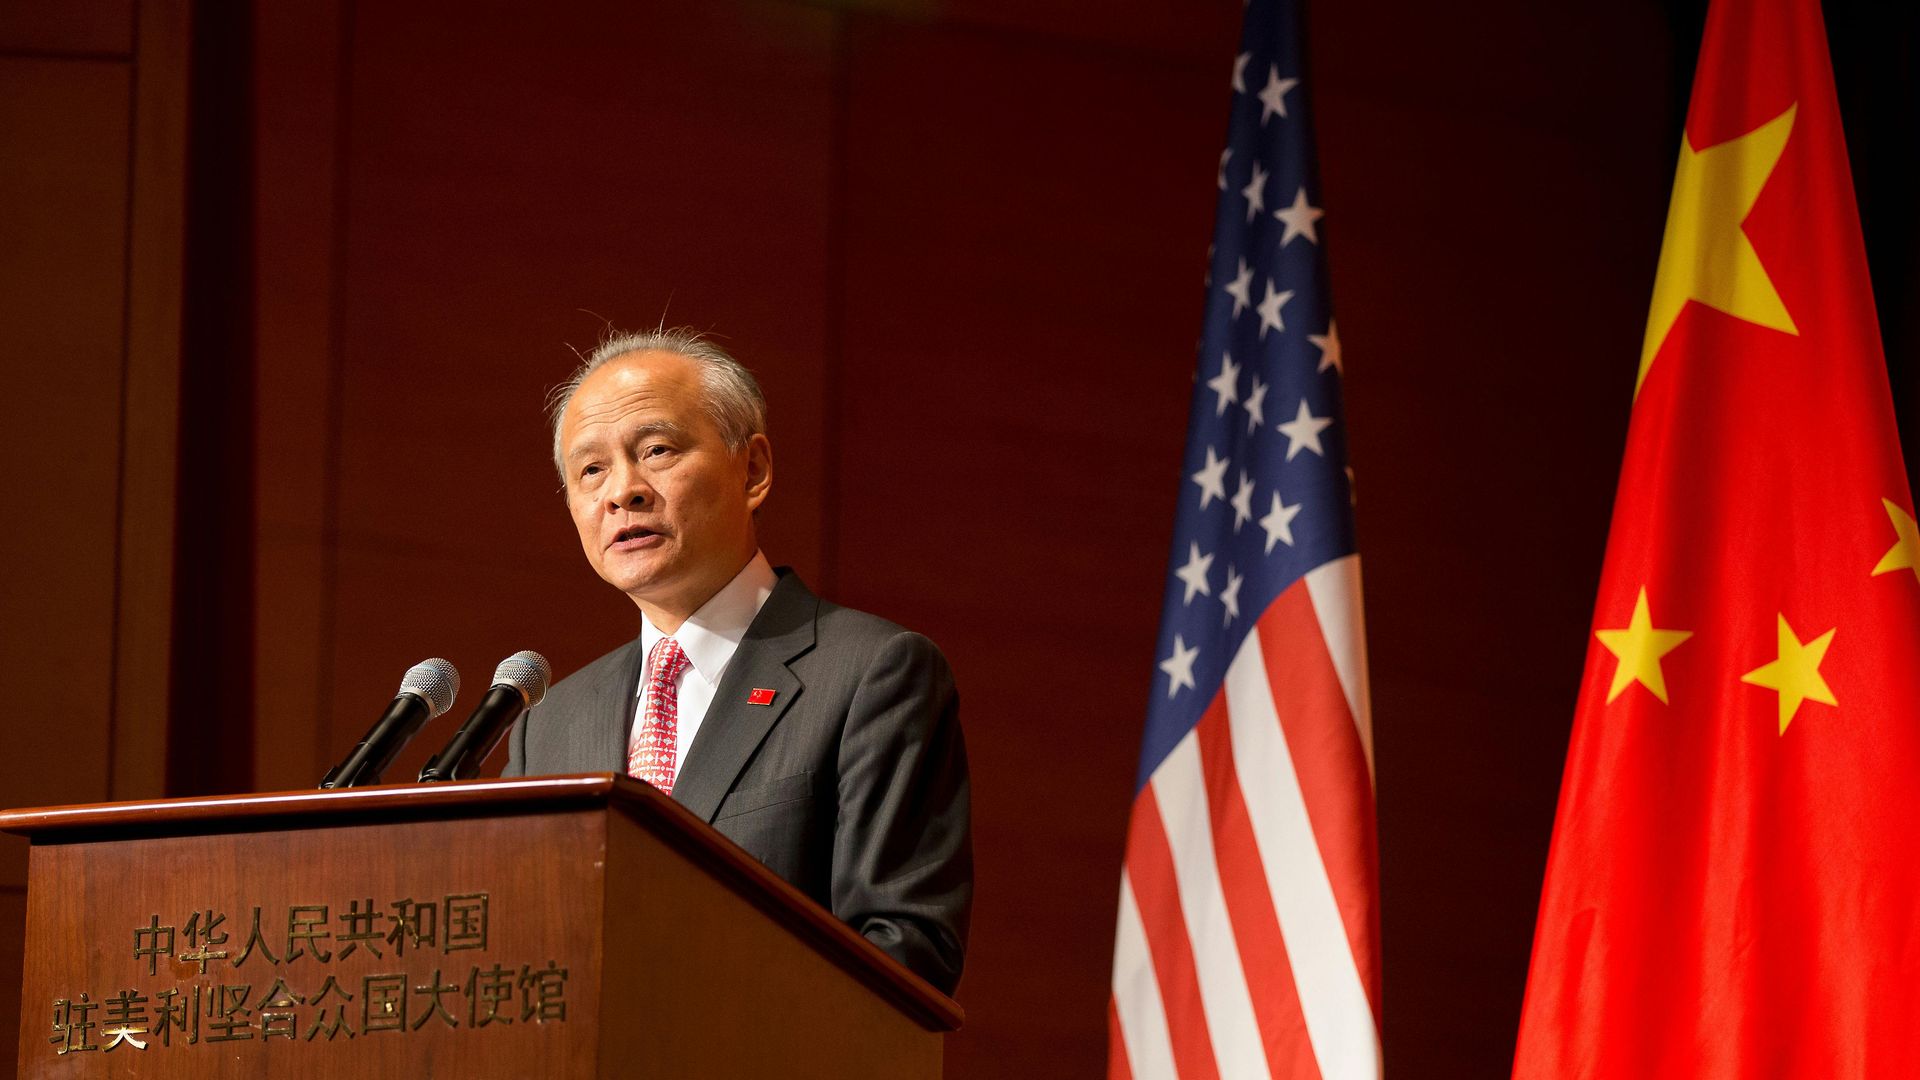 Cui Tiankai speaks at a podium.